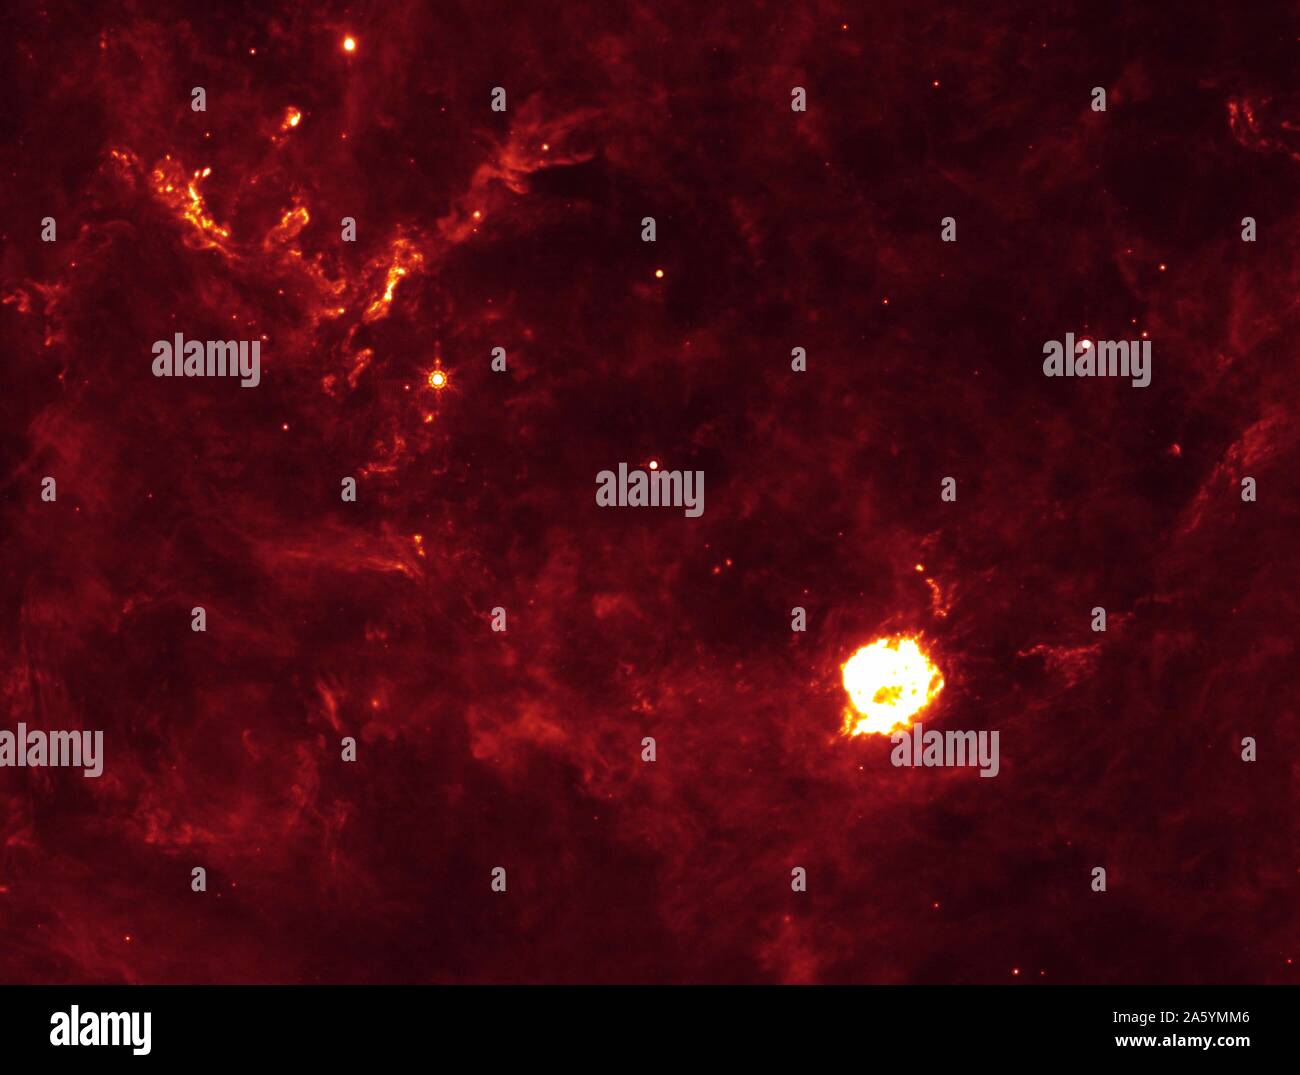 La Cassiopea una supernova il primo flash di radiazione rende sei grumi di polvere (cerchiata in versione annotata) insolitamente caldo. La supernova residuo è la grande sfera bianca nel centro. Questa immagine a infrarossi è stata presa dalla NASA il telescopio spaziale Spitzer. Foto Stock